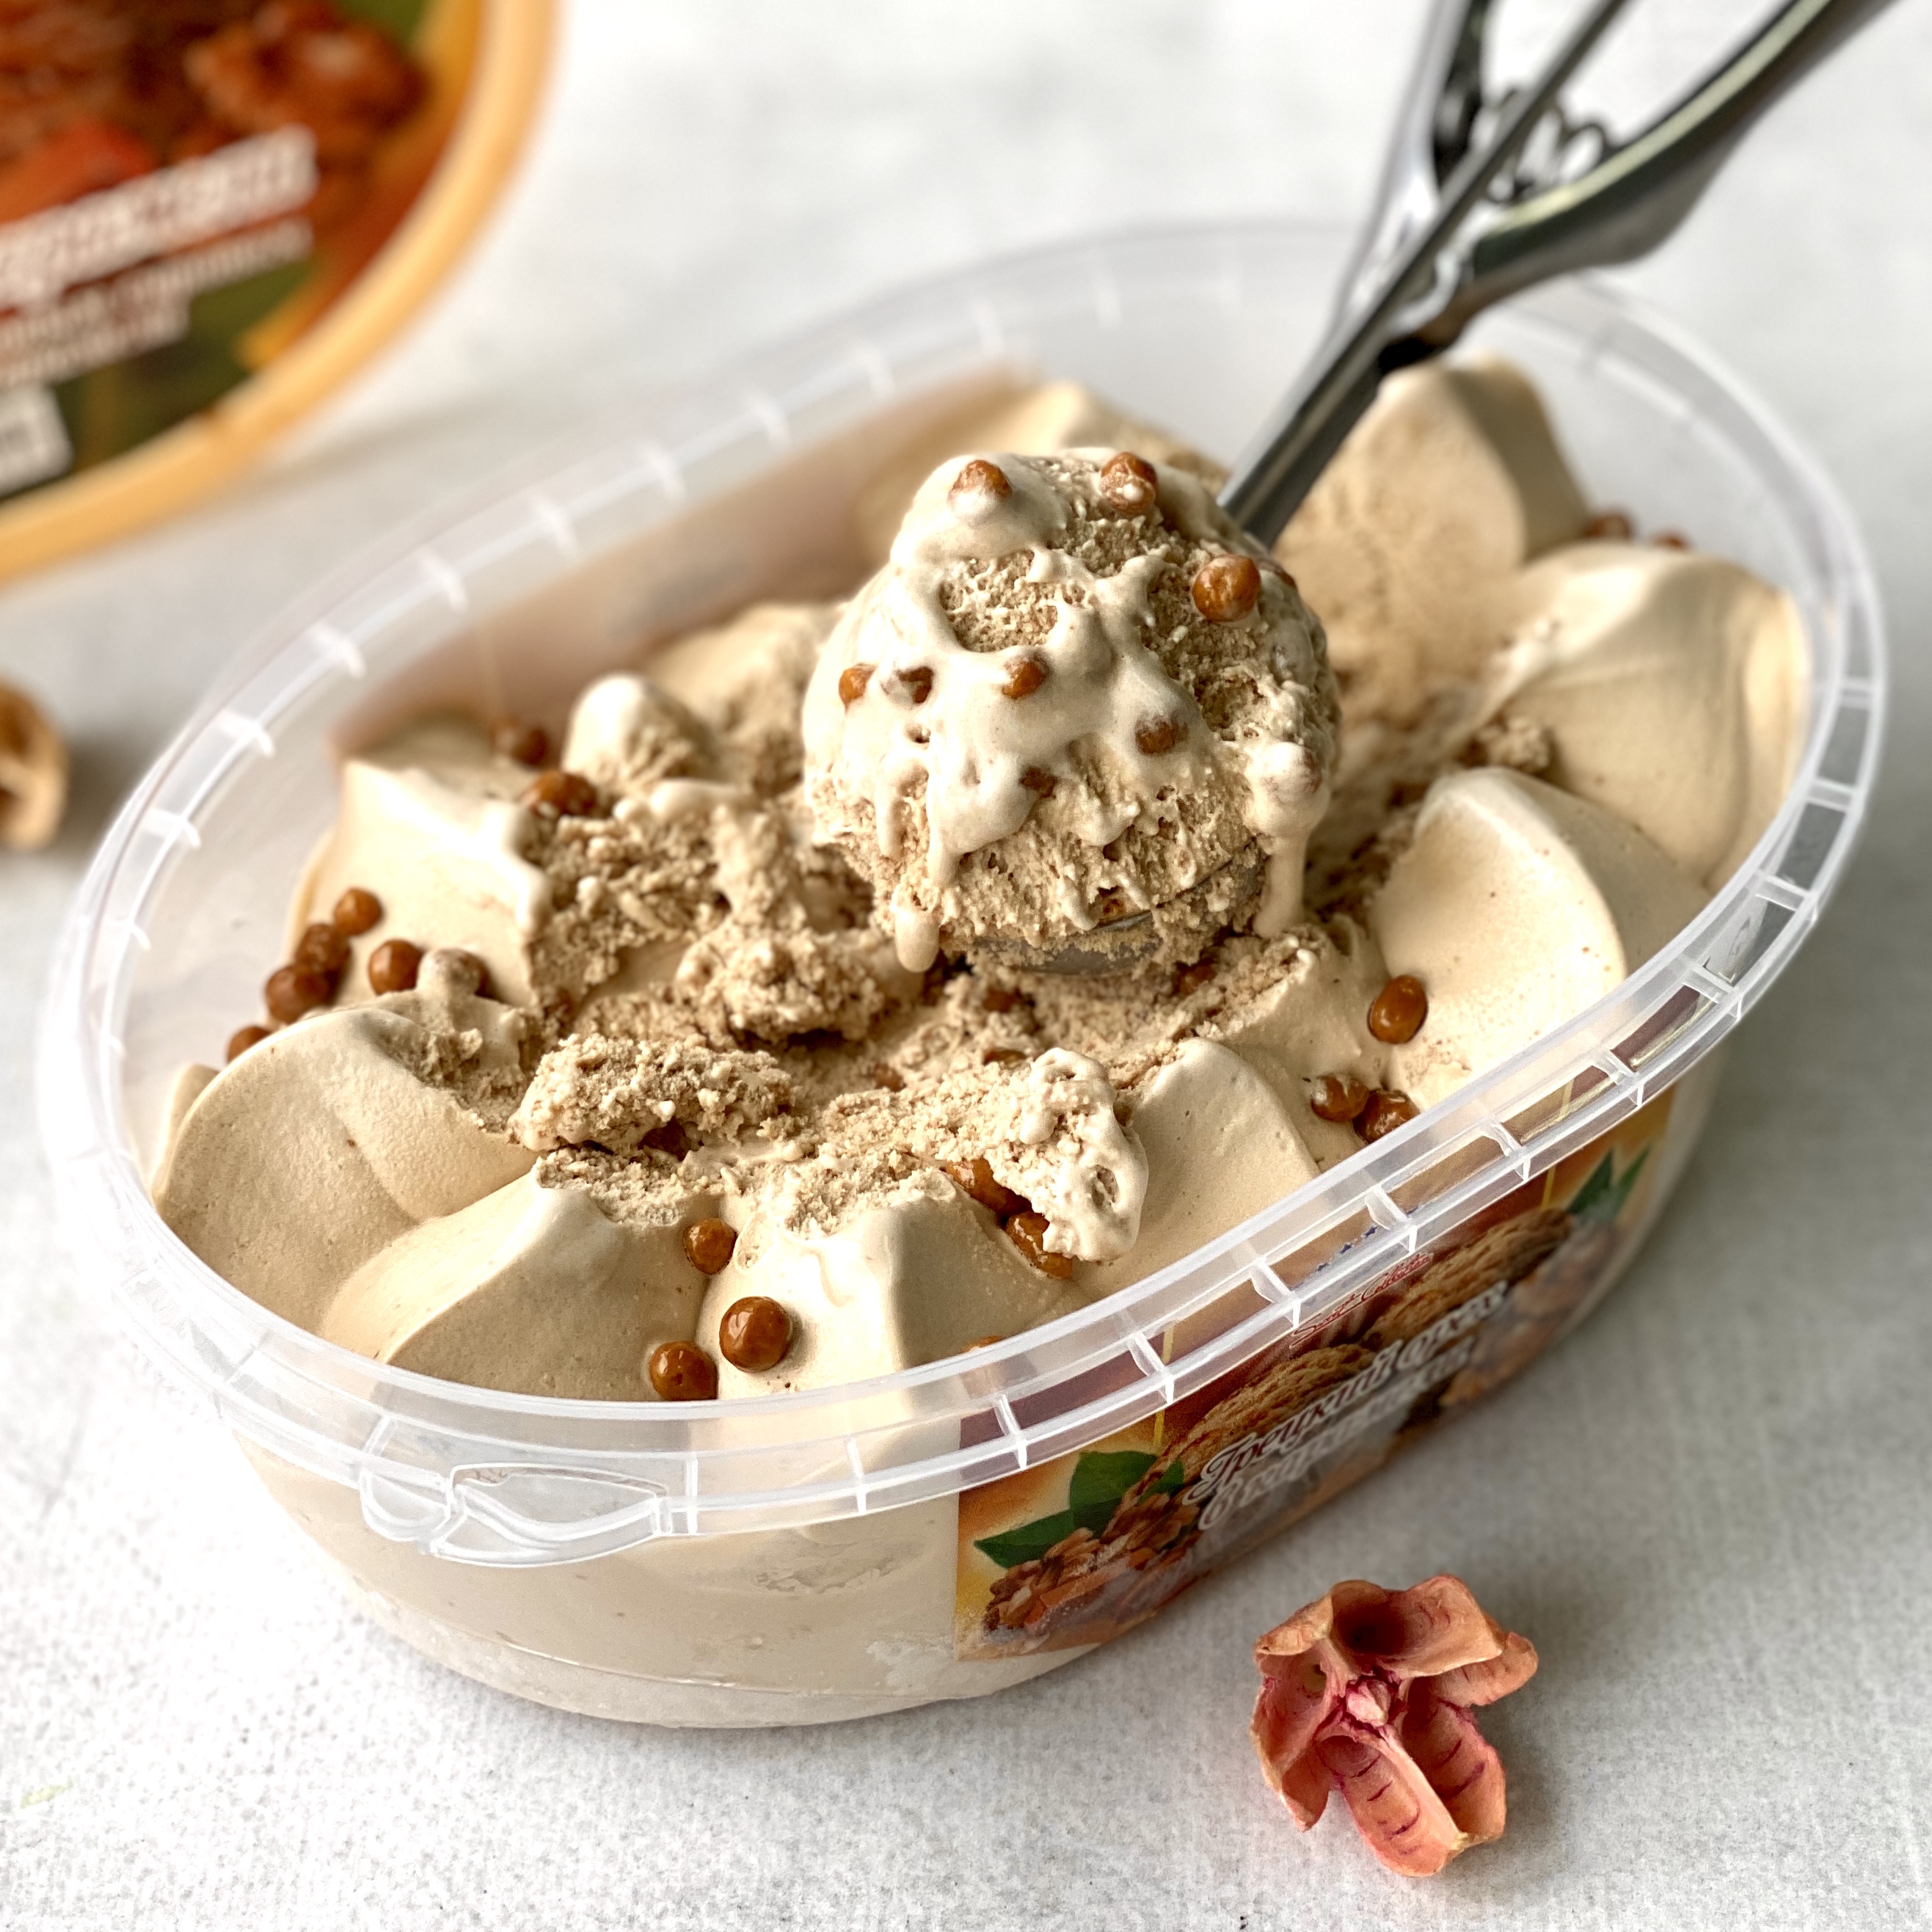 Мороженое пломбир с кленовым сиропом и грецким орехом в карамели изображение 4